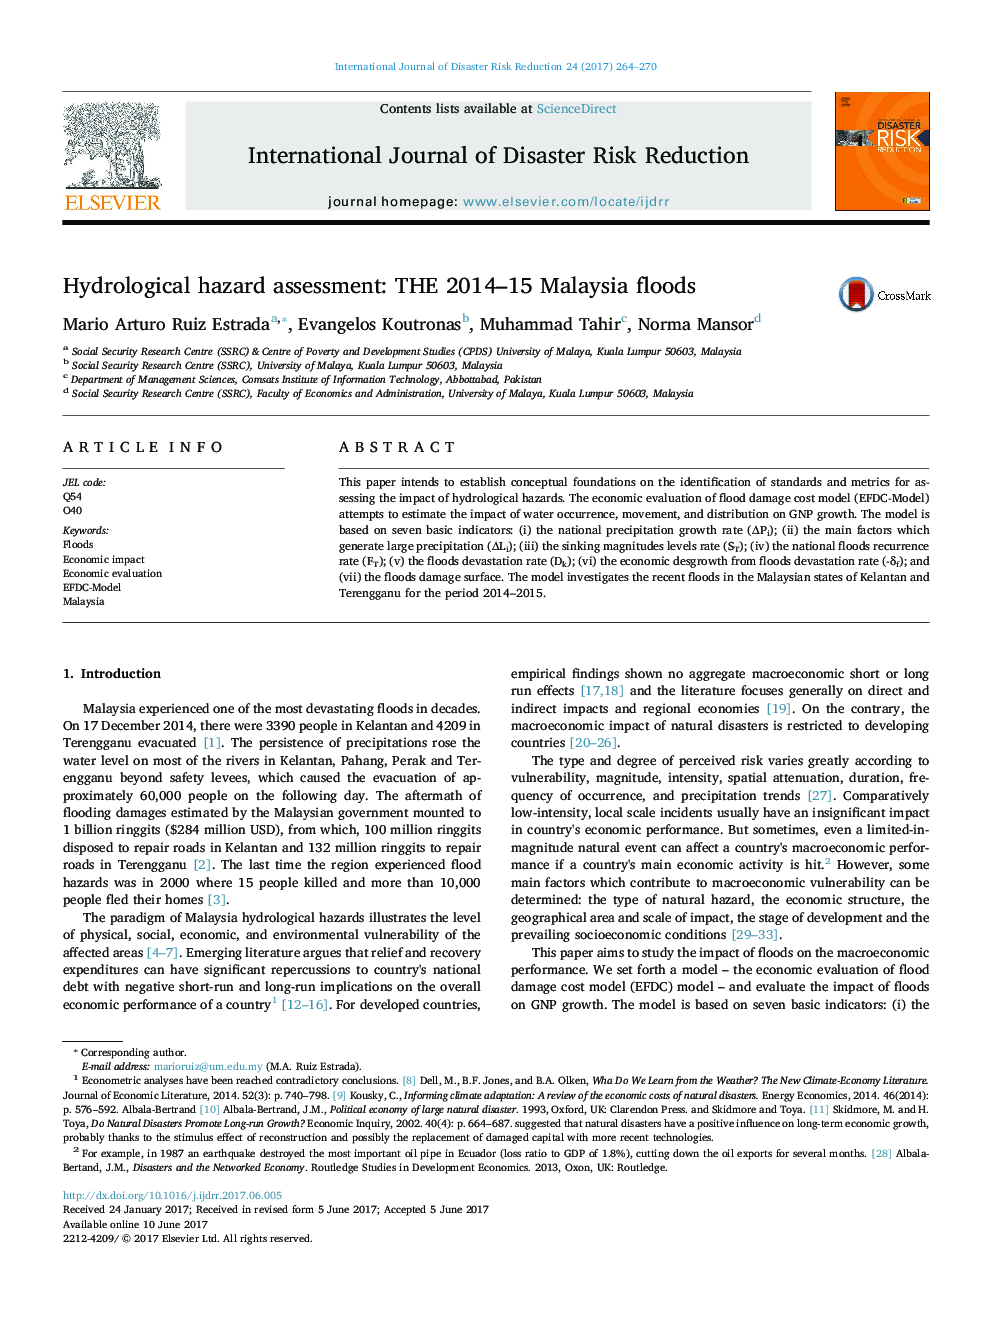 ارزیابی خطر هیدرولوژیکی: سیل مالزی 2014-15 